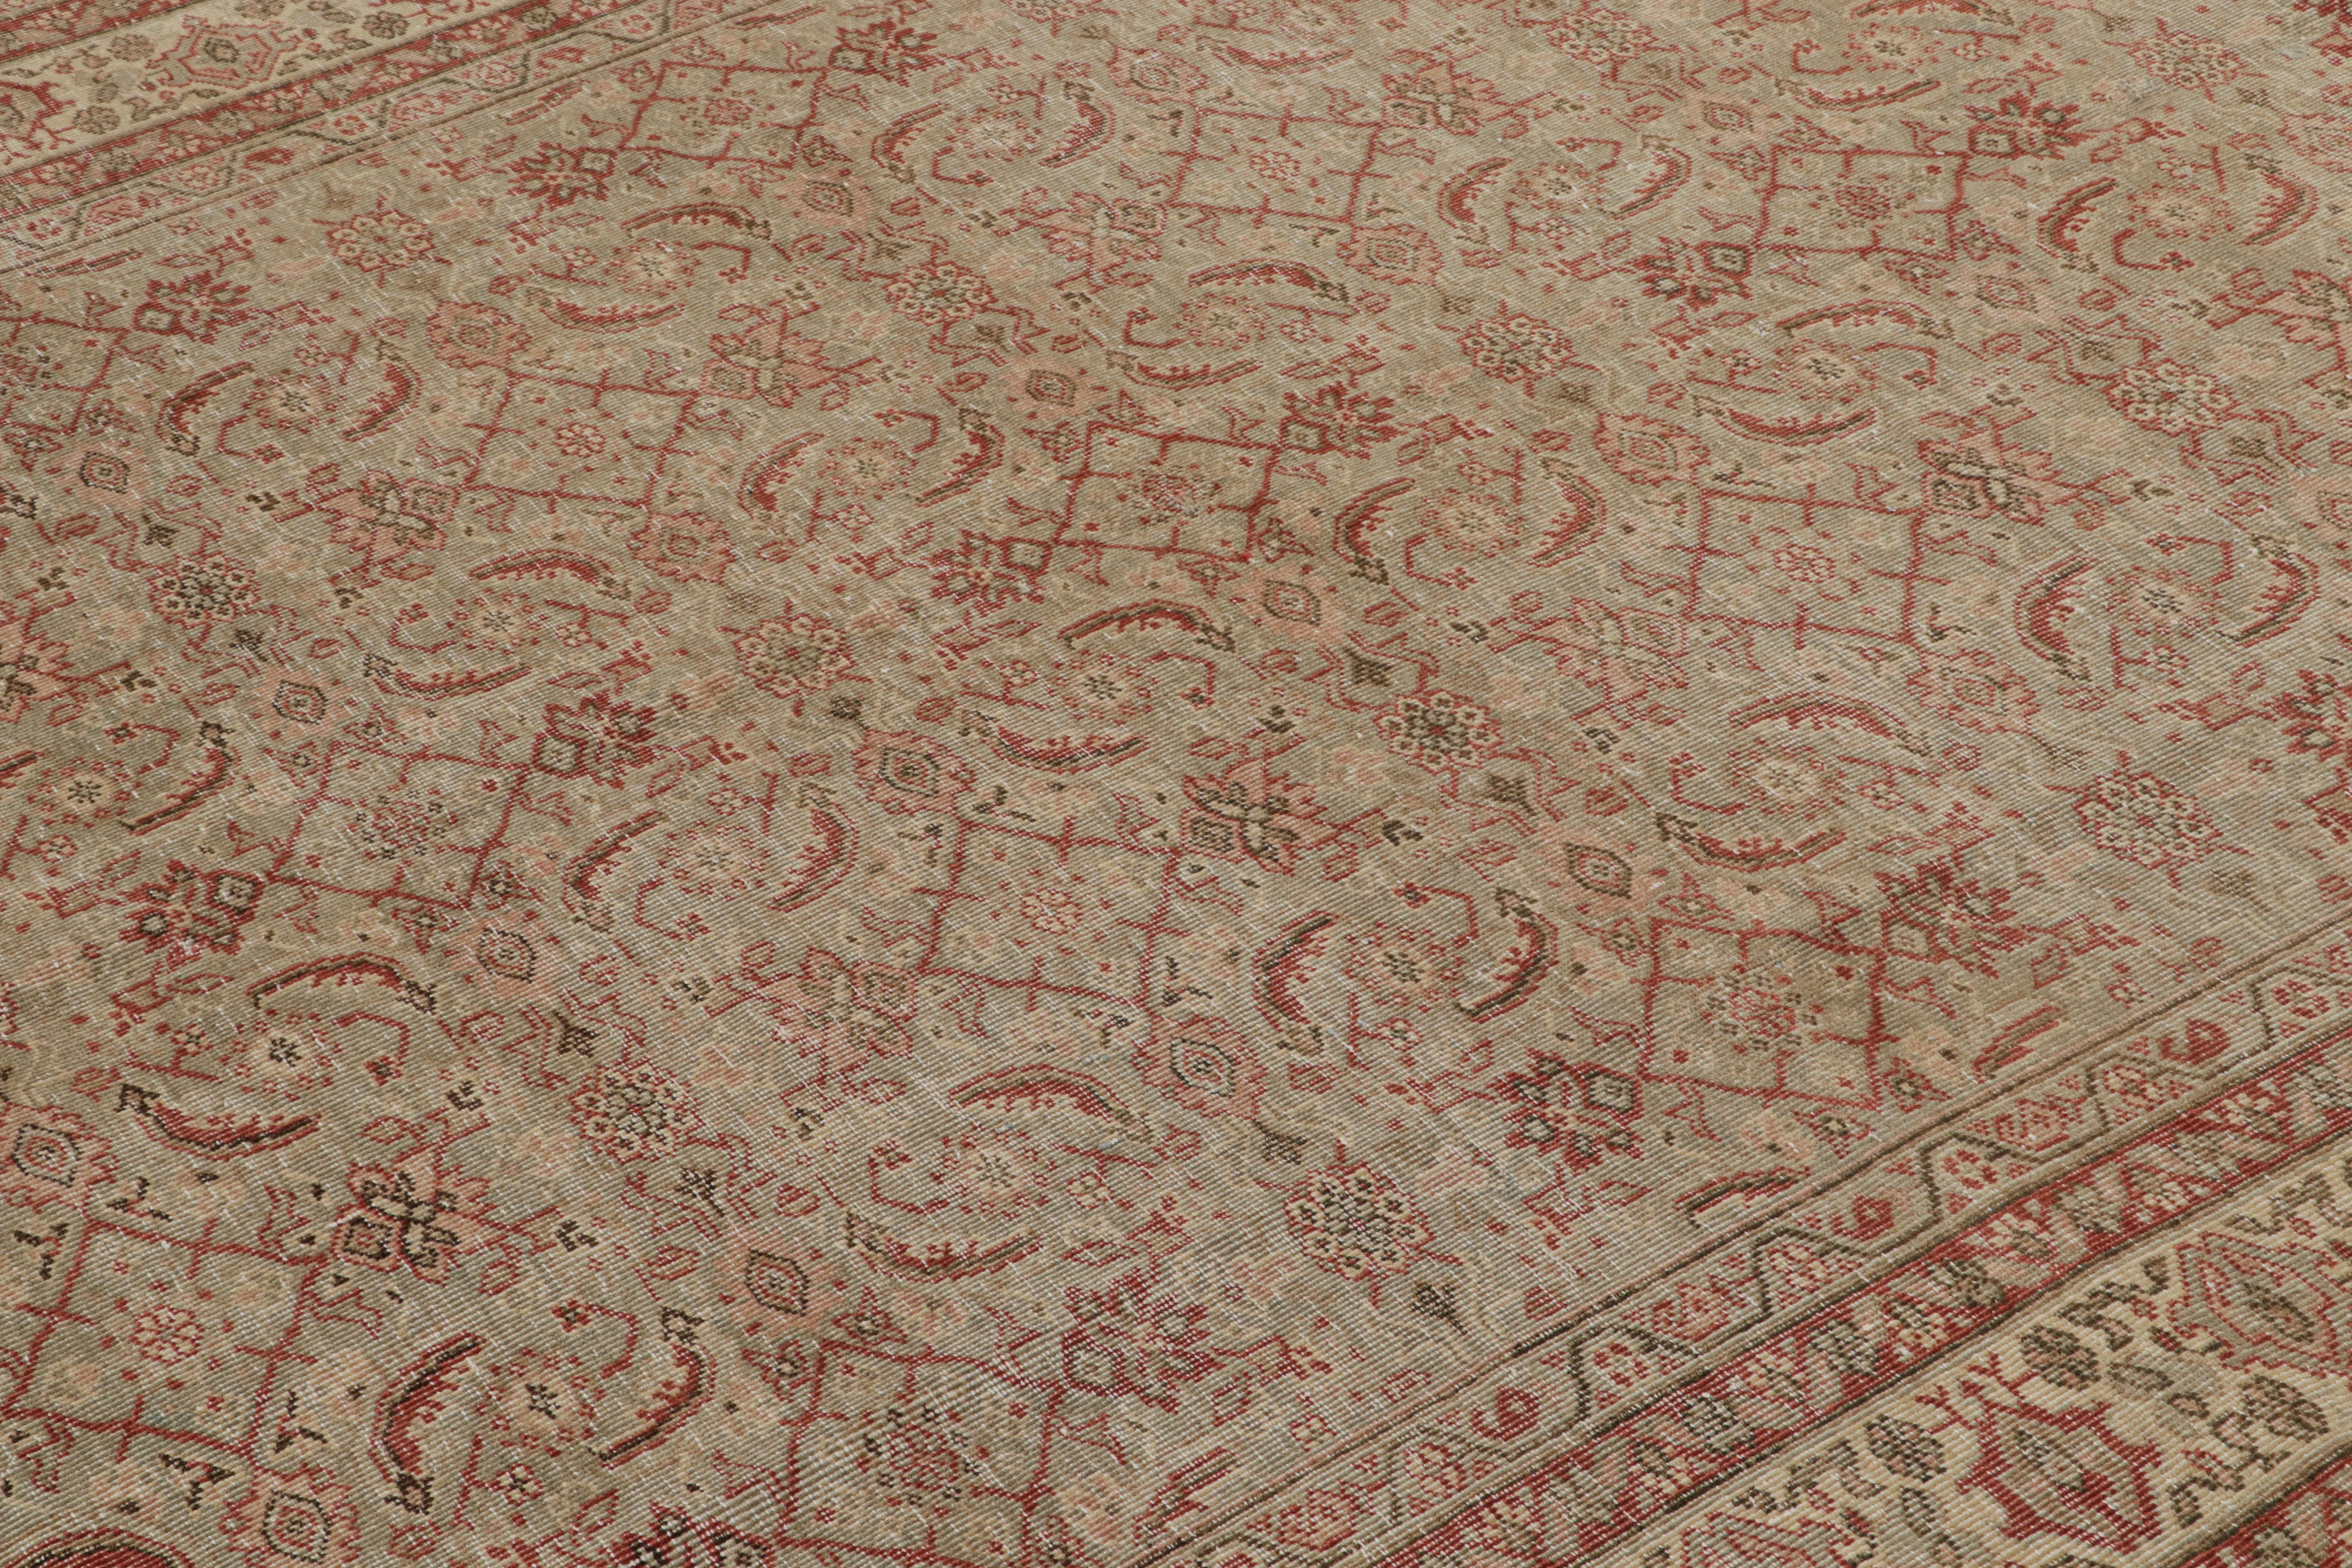 Dieser 6x10 große türkische Teppich ist aus Wolle handgeknüpft und zeigt sowohl im Feld als auch in der Bordüre ein Spiel aus floralen Mustern. 

Über das Design: 

Dieser türkische Vintage-Teppich mit seinen salbeigrünen, rosafarbenen und